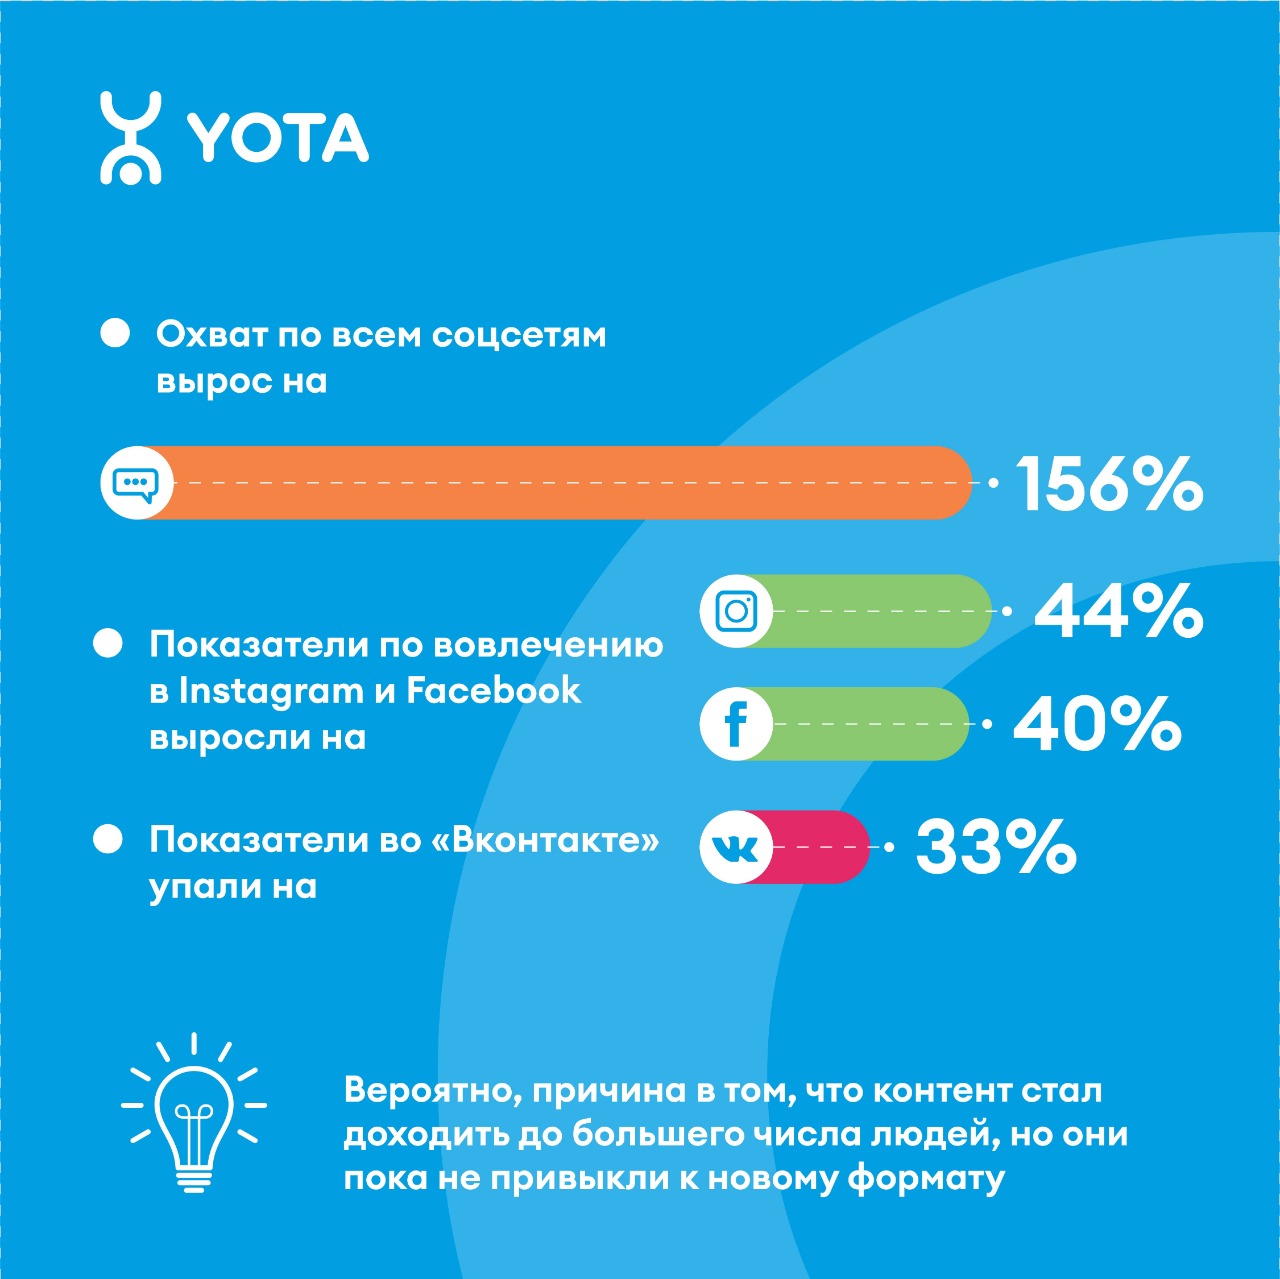 Кейс Yota: как компания выбрала стратегию бренд-медиа в социальных сетях и повысила охват на 156%